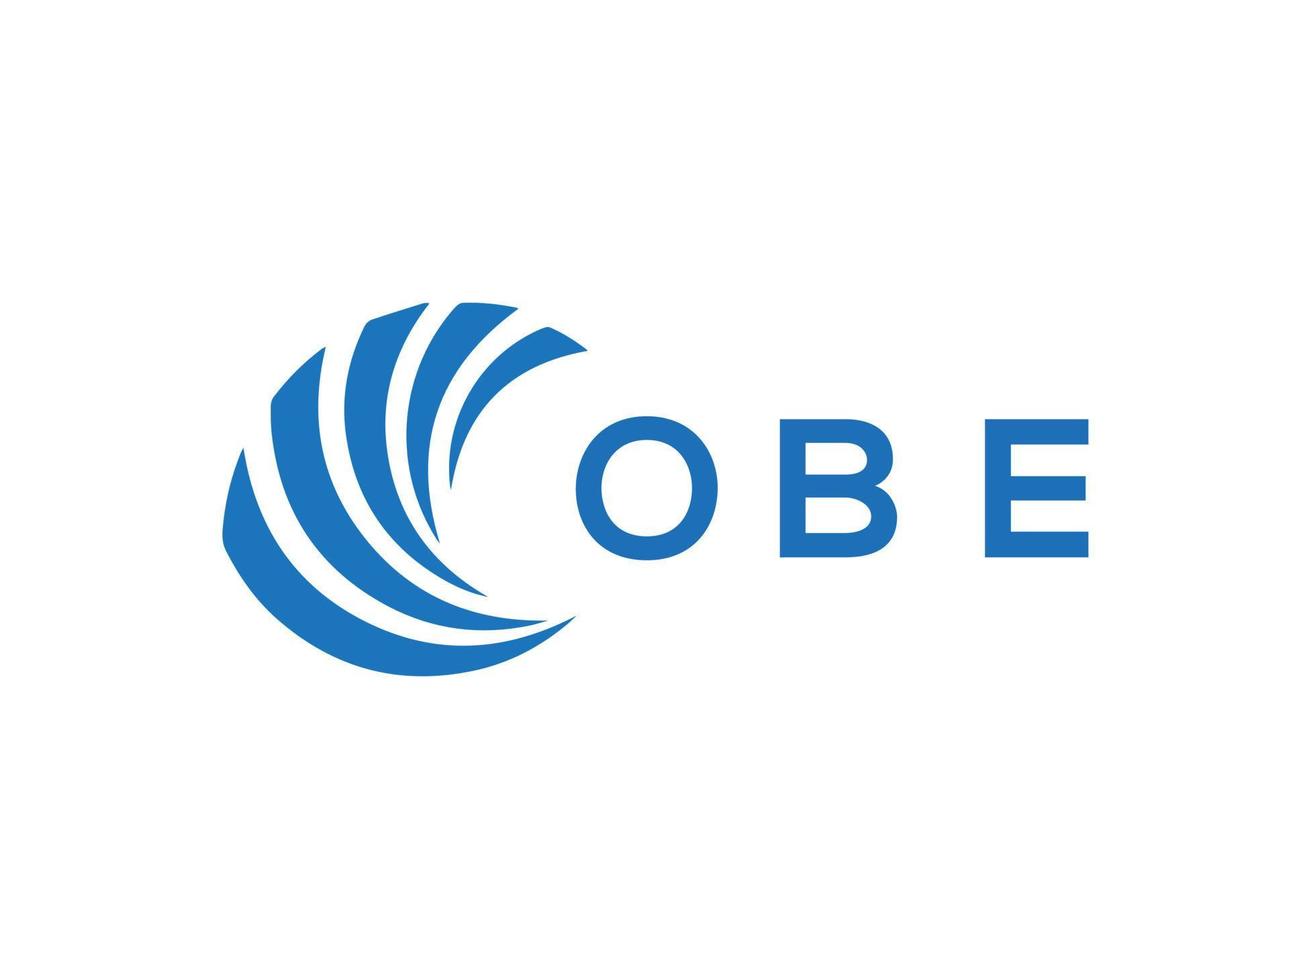 OBE creative circle letter logo concept. OBE letter design.OBE letter logo design on white background. OBE creative circle letter logo concept. OBE letter design. vector